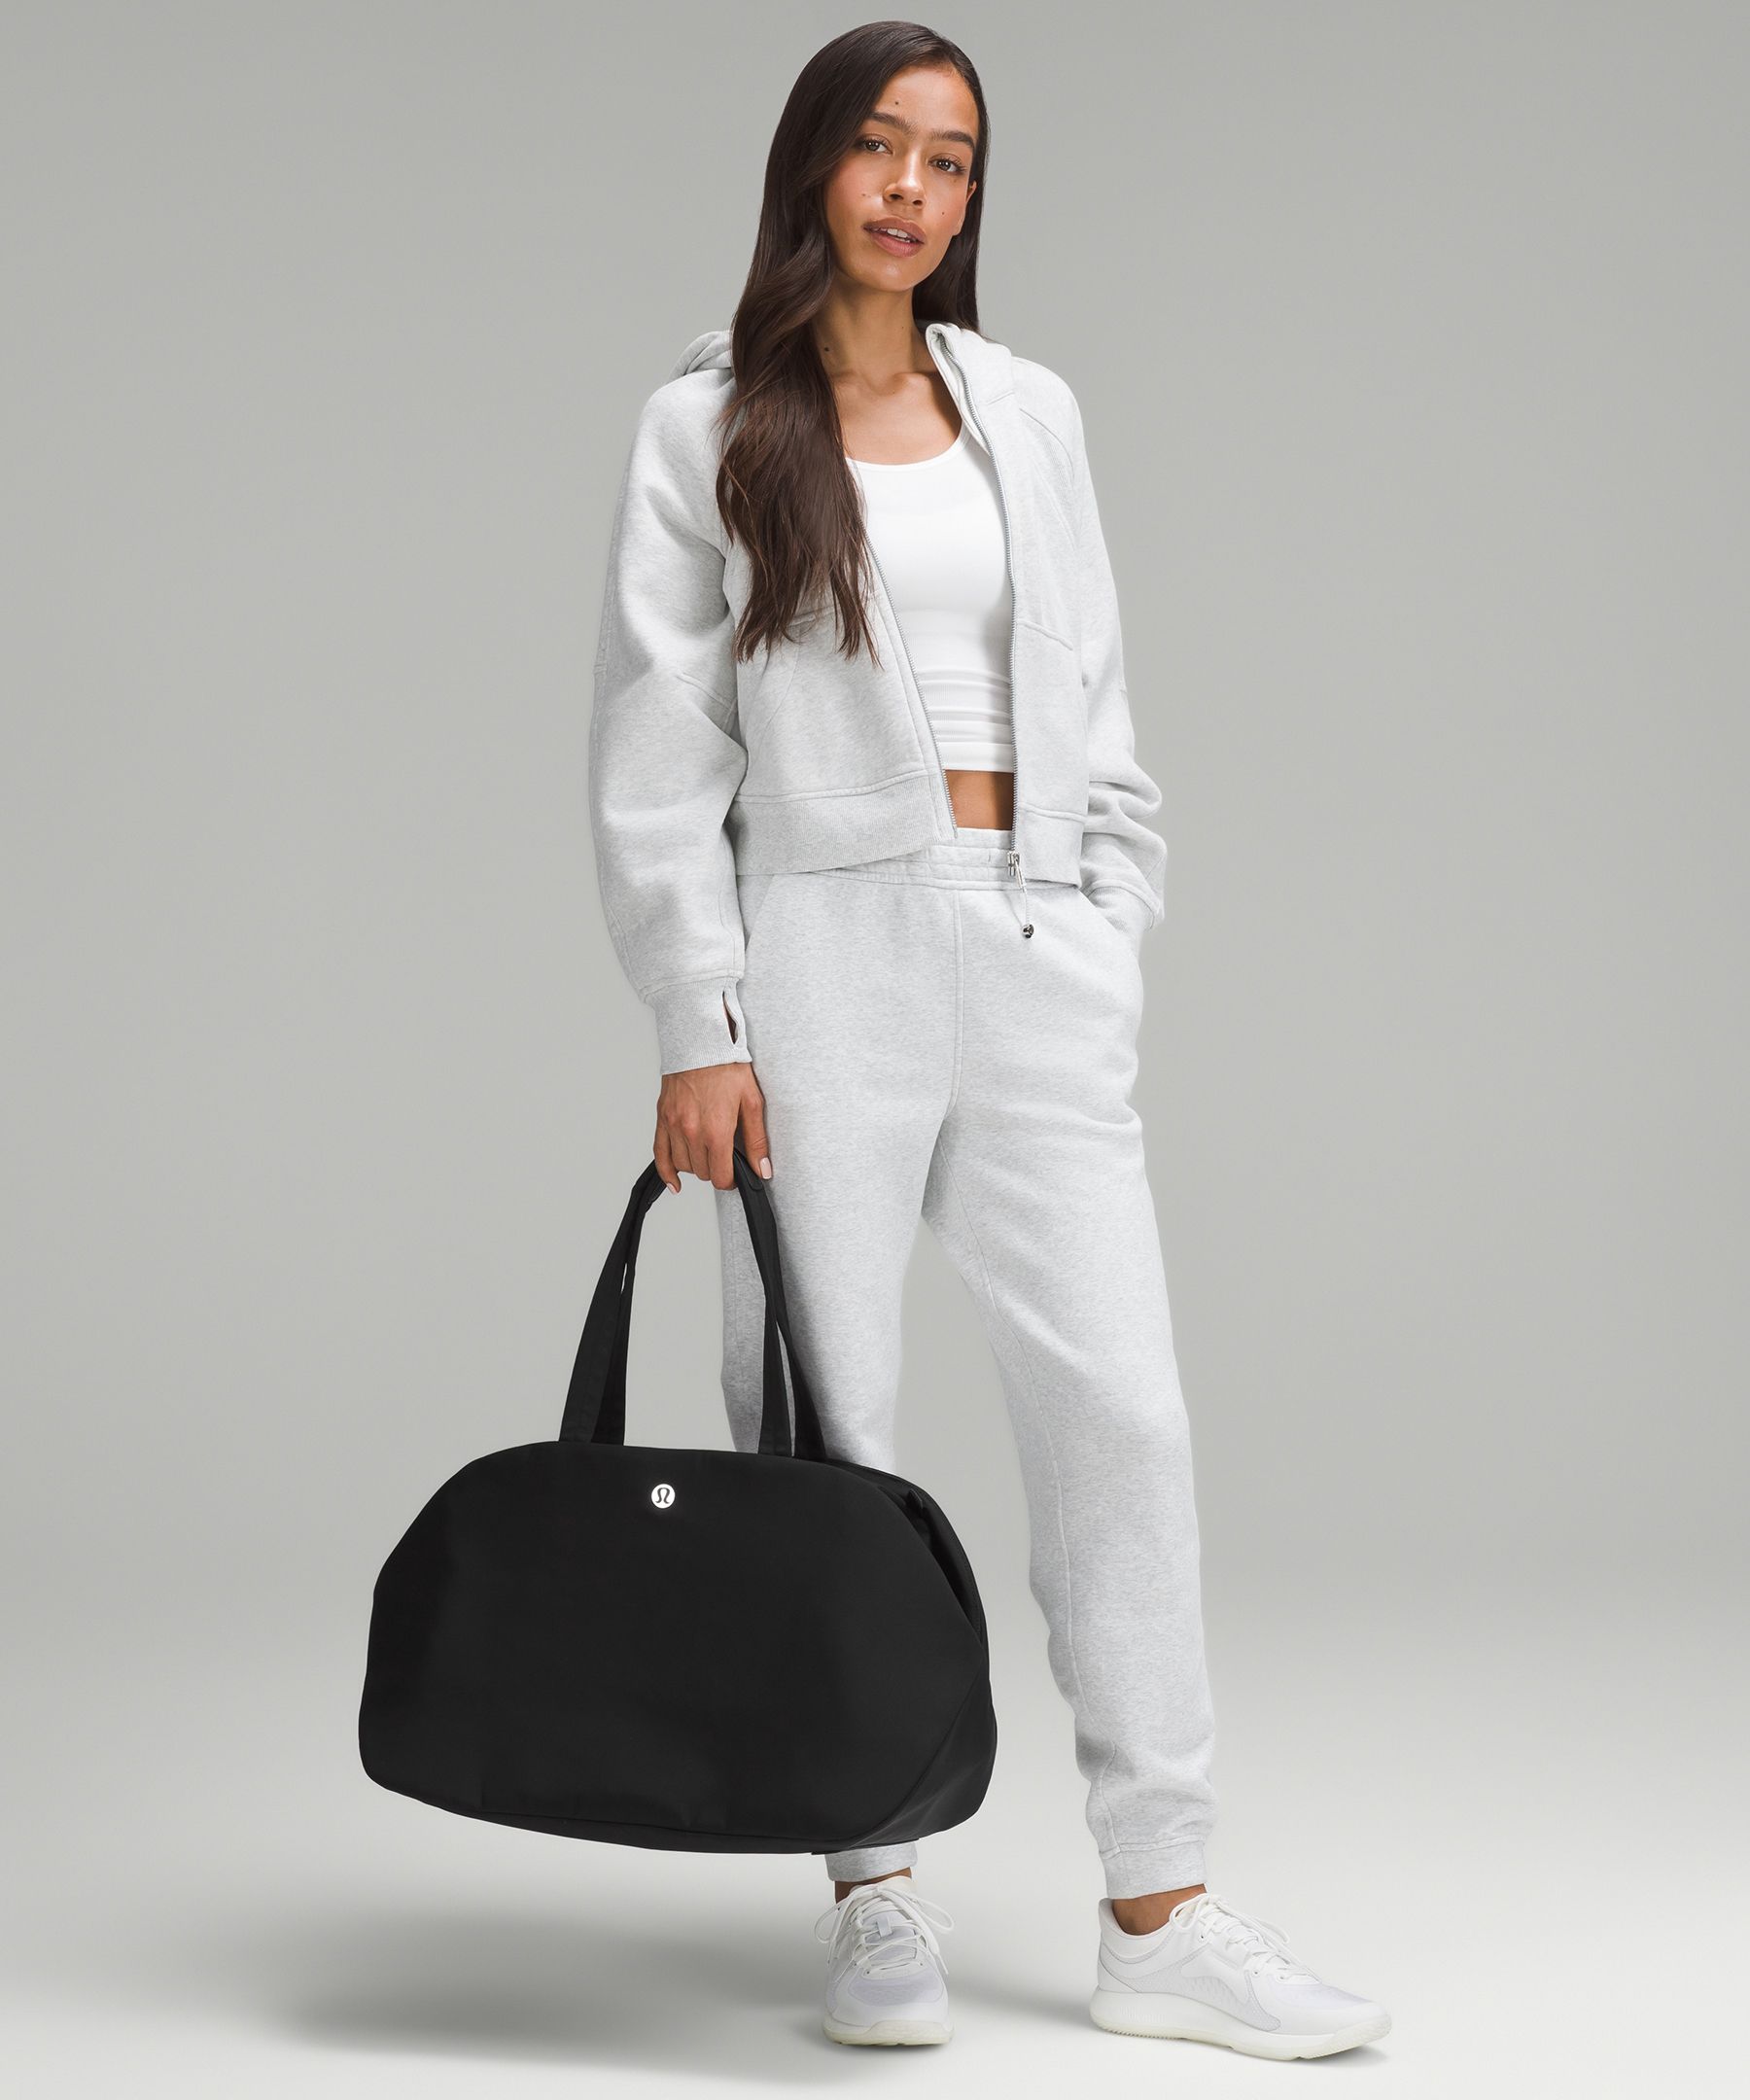 City Essentials Bag 25L | Women's Bags,Purses,Wallets